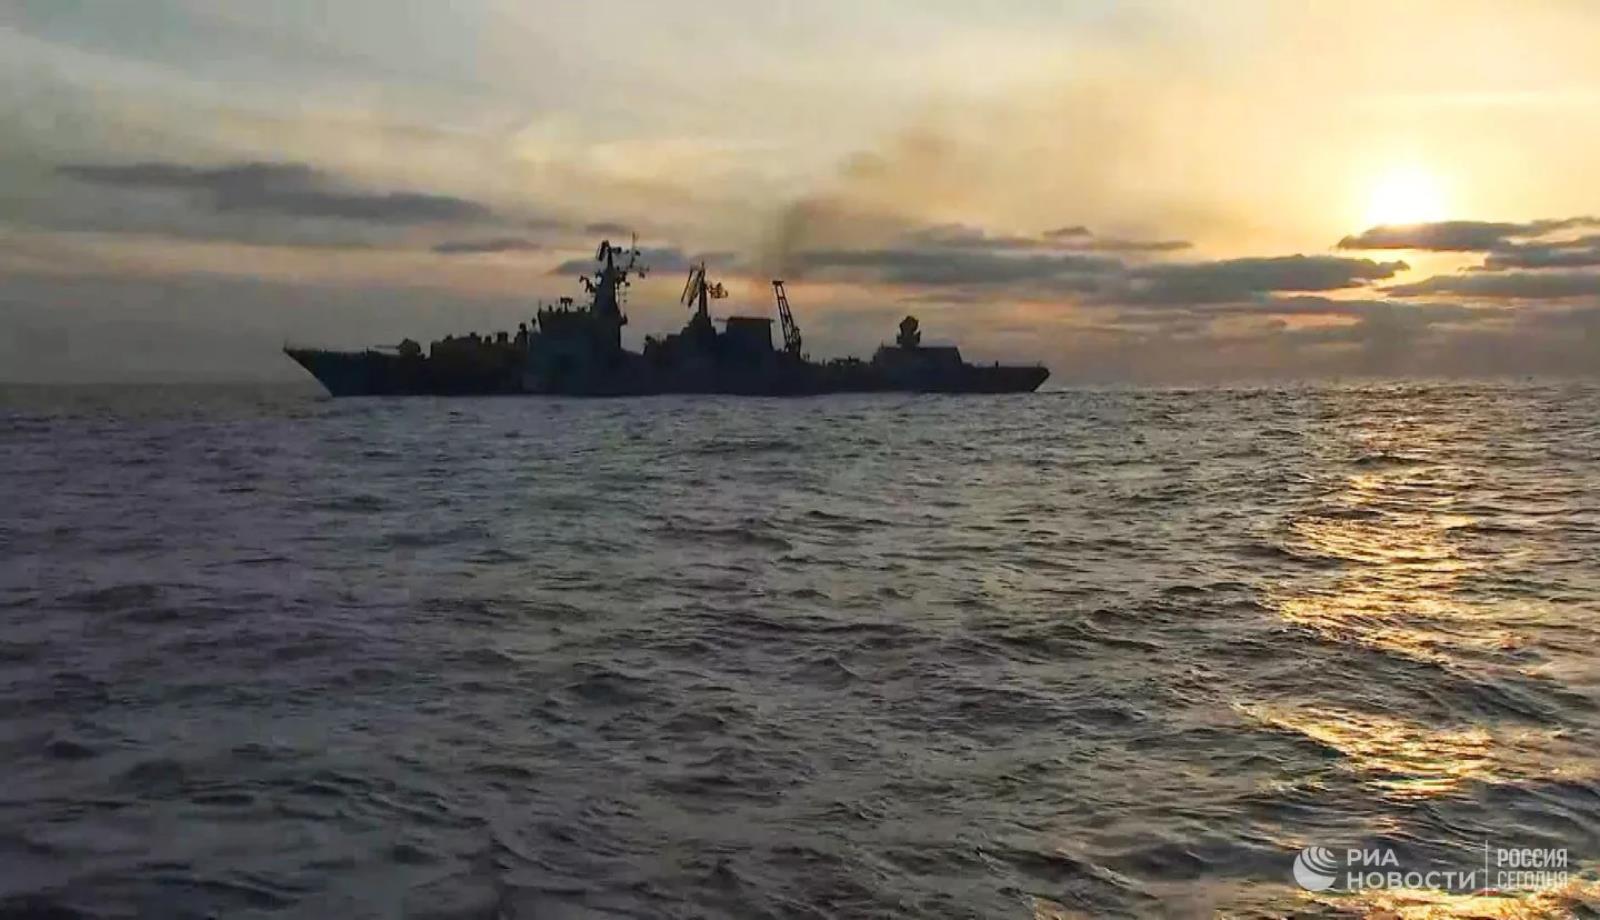 Ukraina zniszczyła najważniejszy rosyjski okręt, krążownik rakietowy Moskva płonie